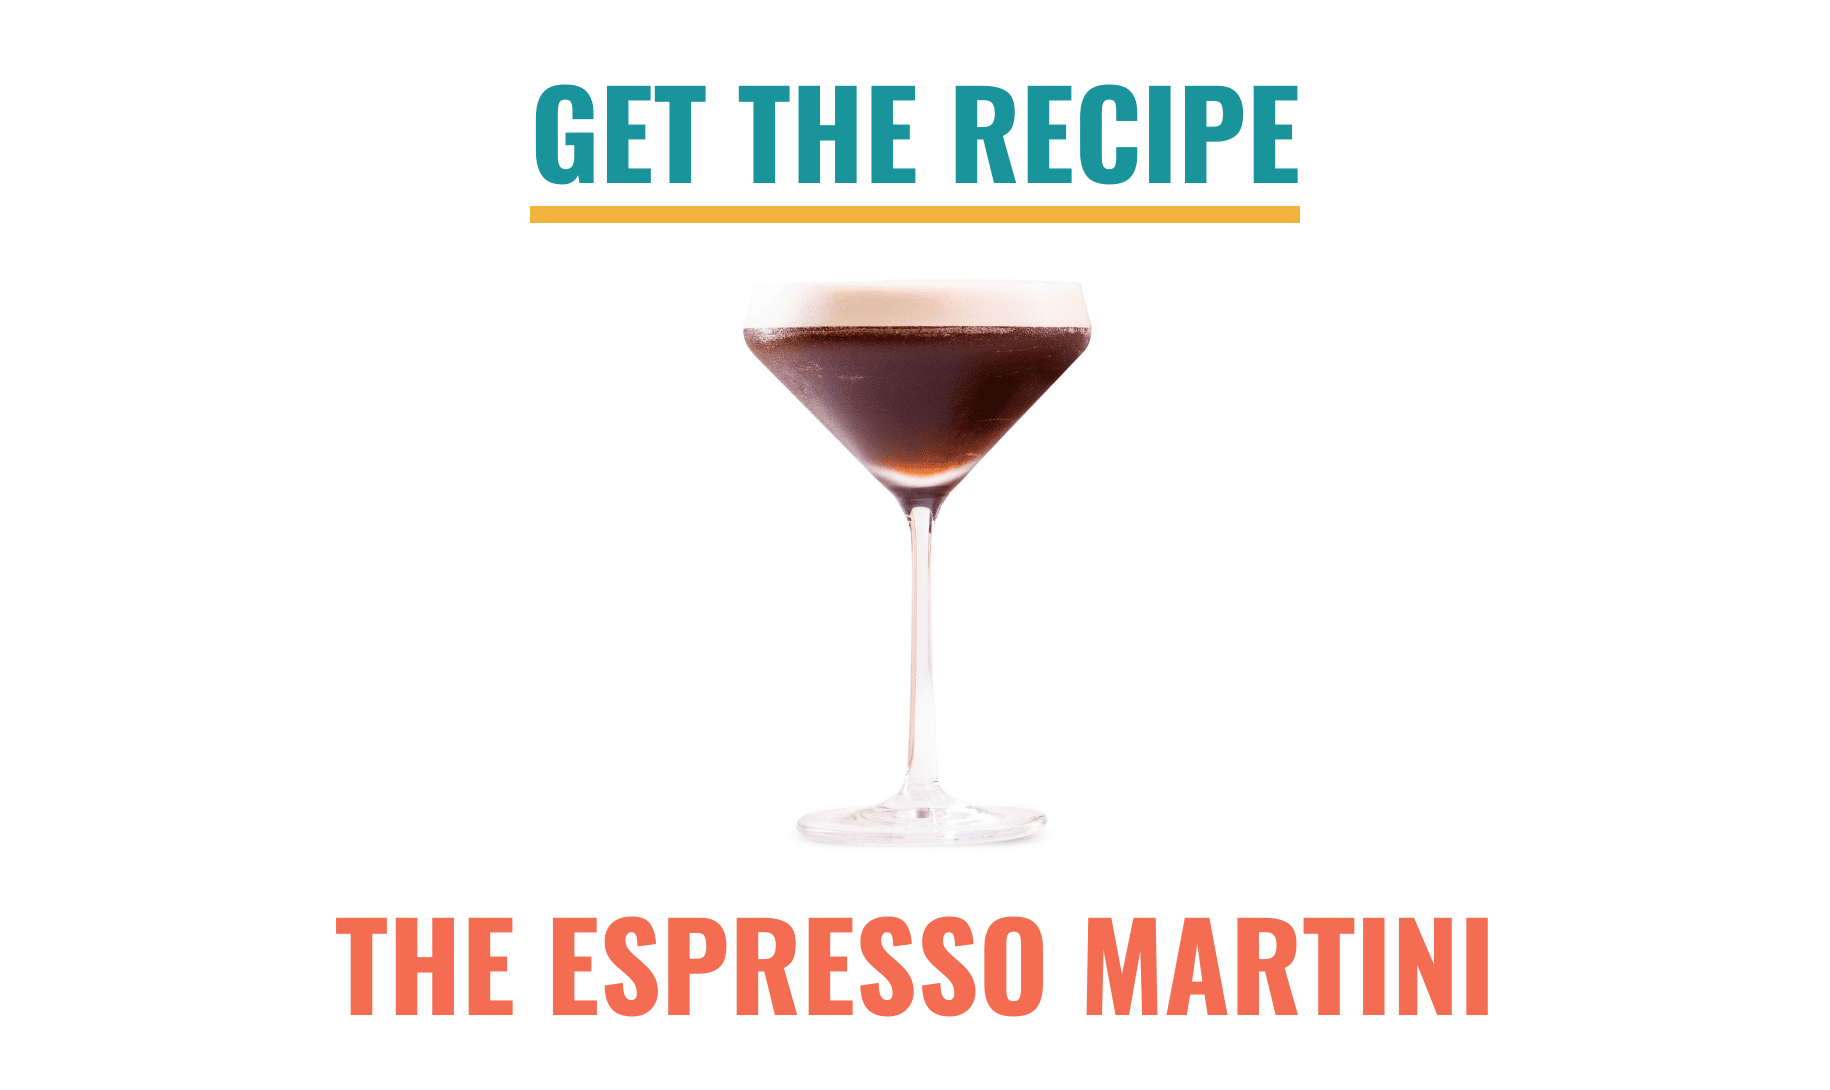 Get the Espresso Martini recipe